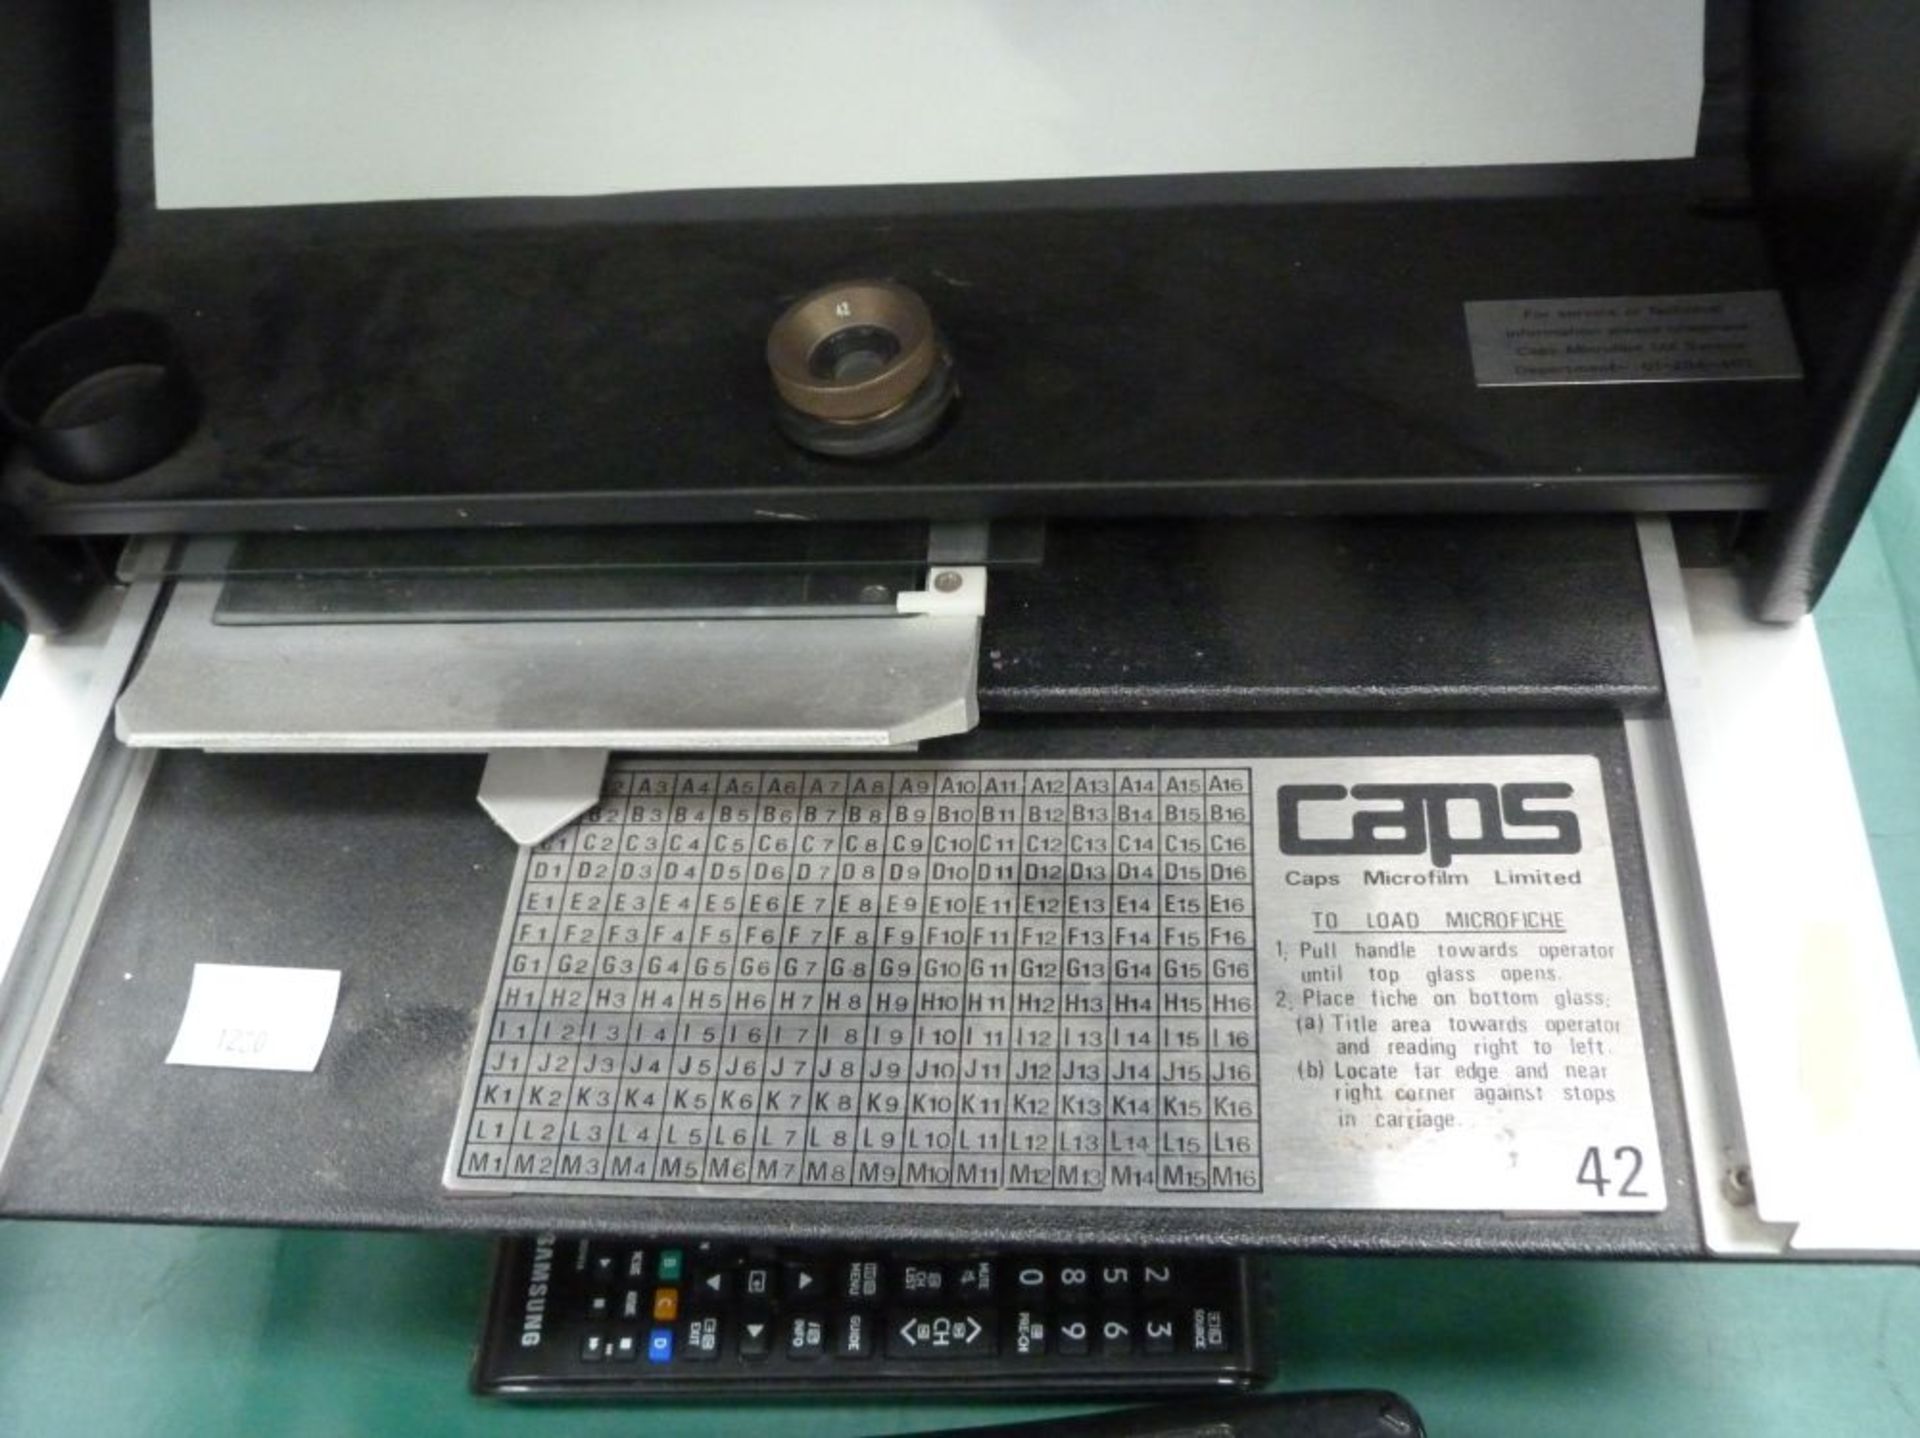 A Caps Microfilm LTD Microfiche (Est £20-£40) - Image 2 of 2